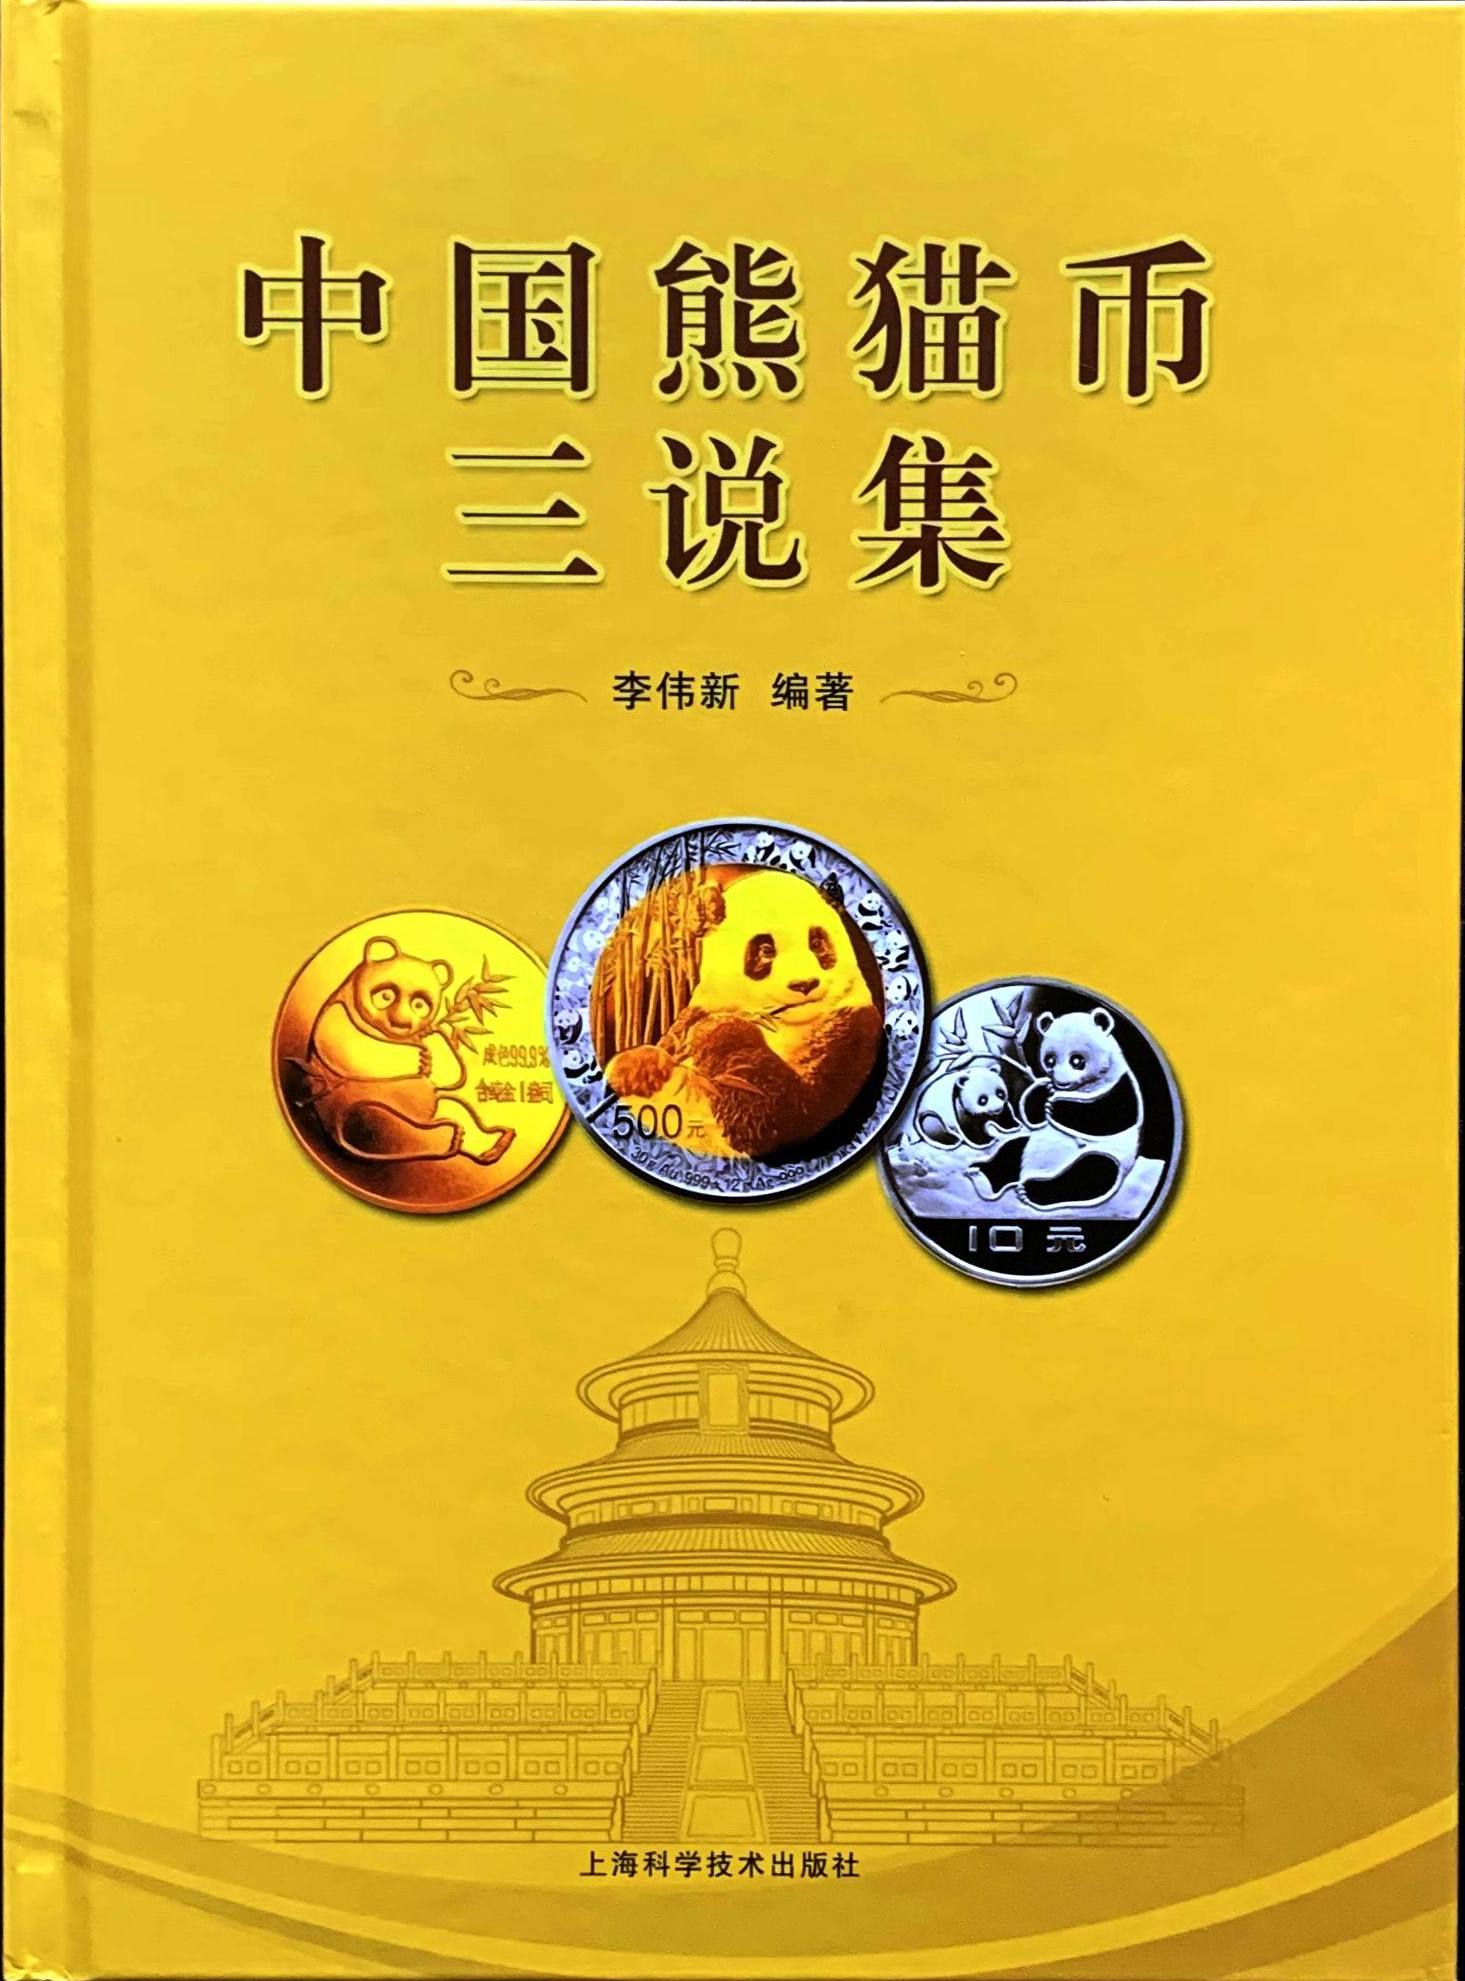 中国熊猫币三说集